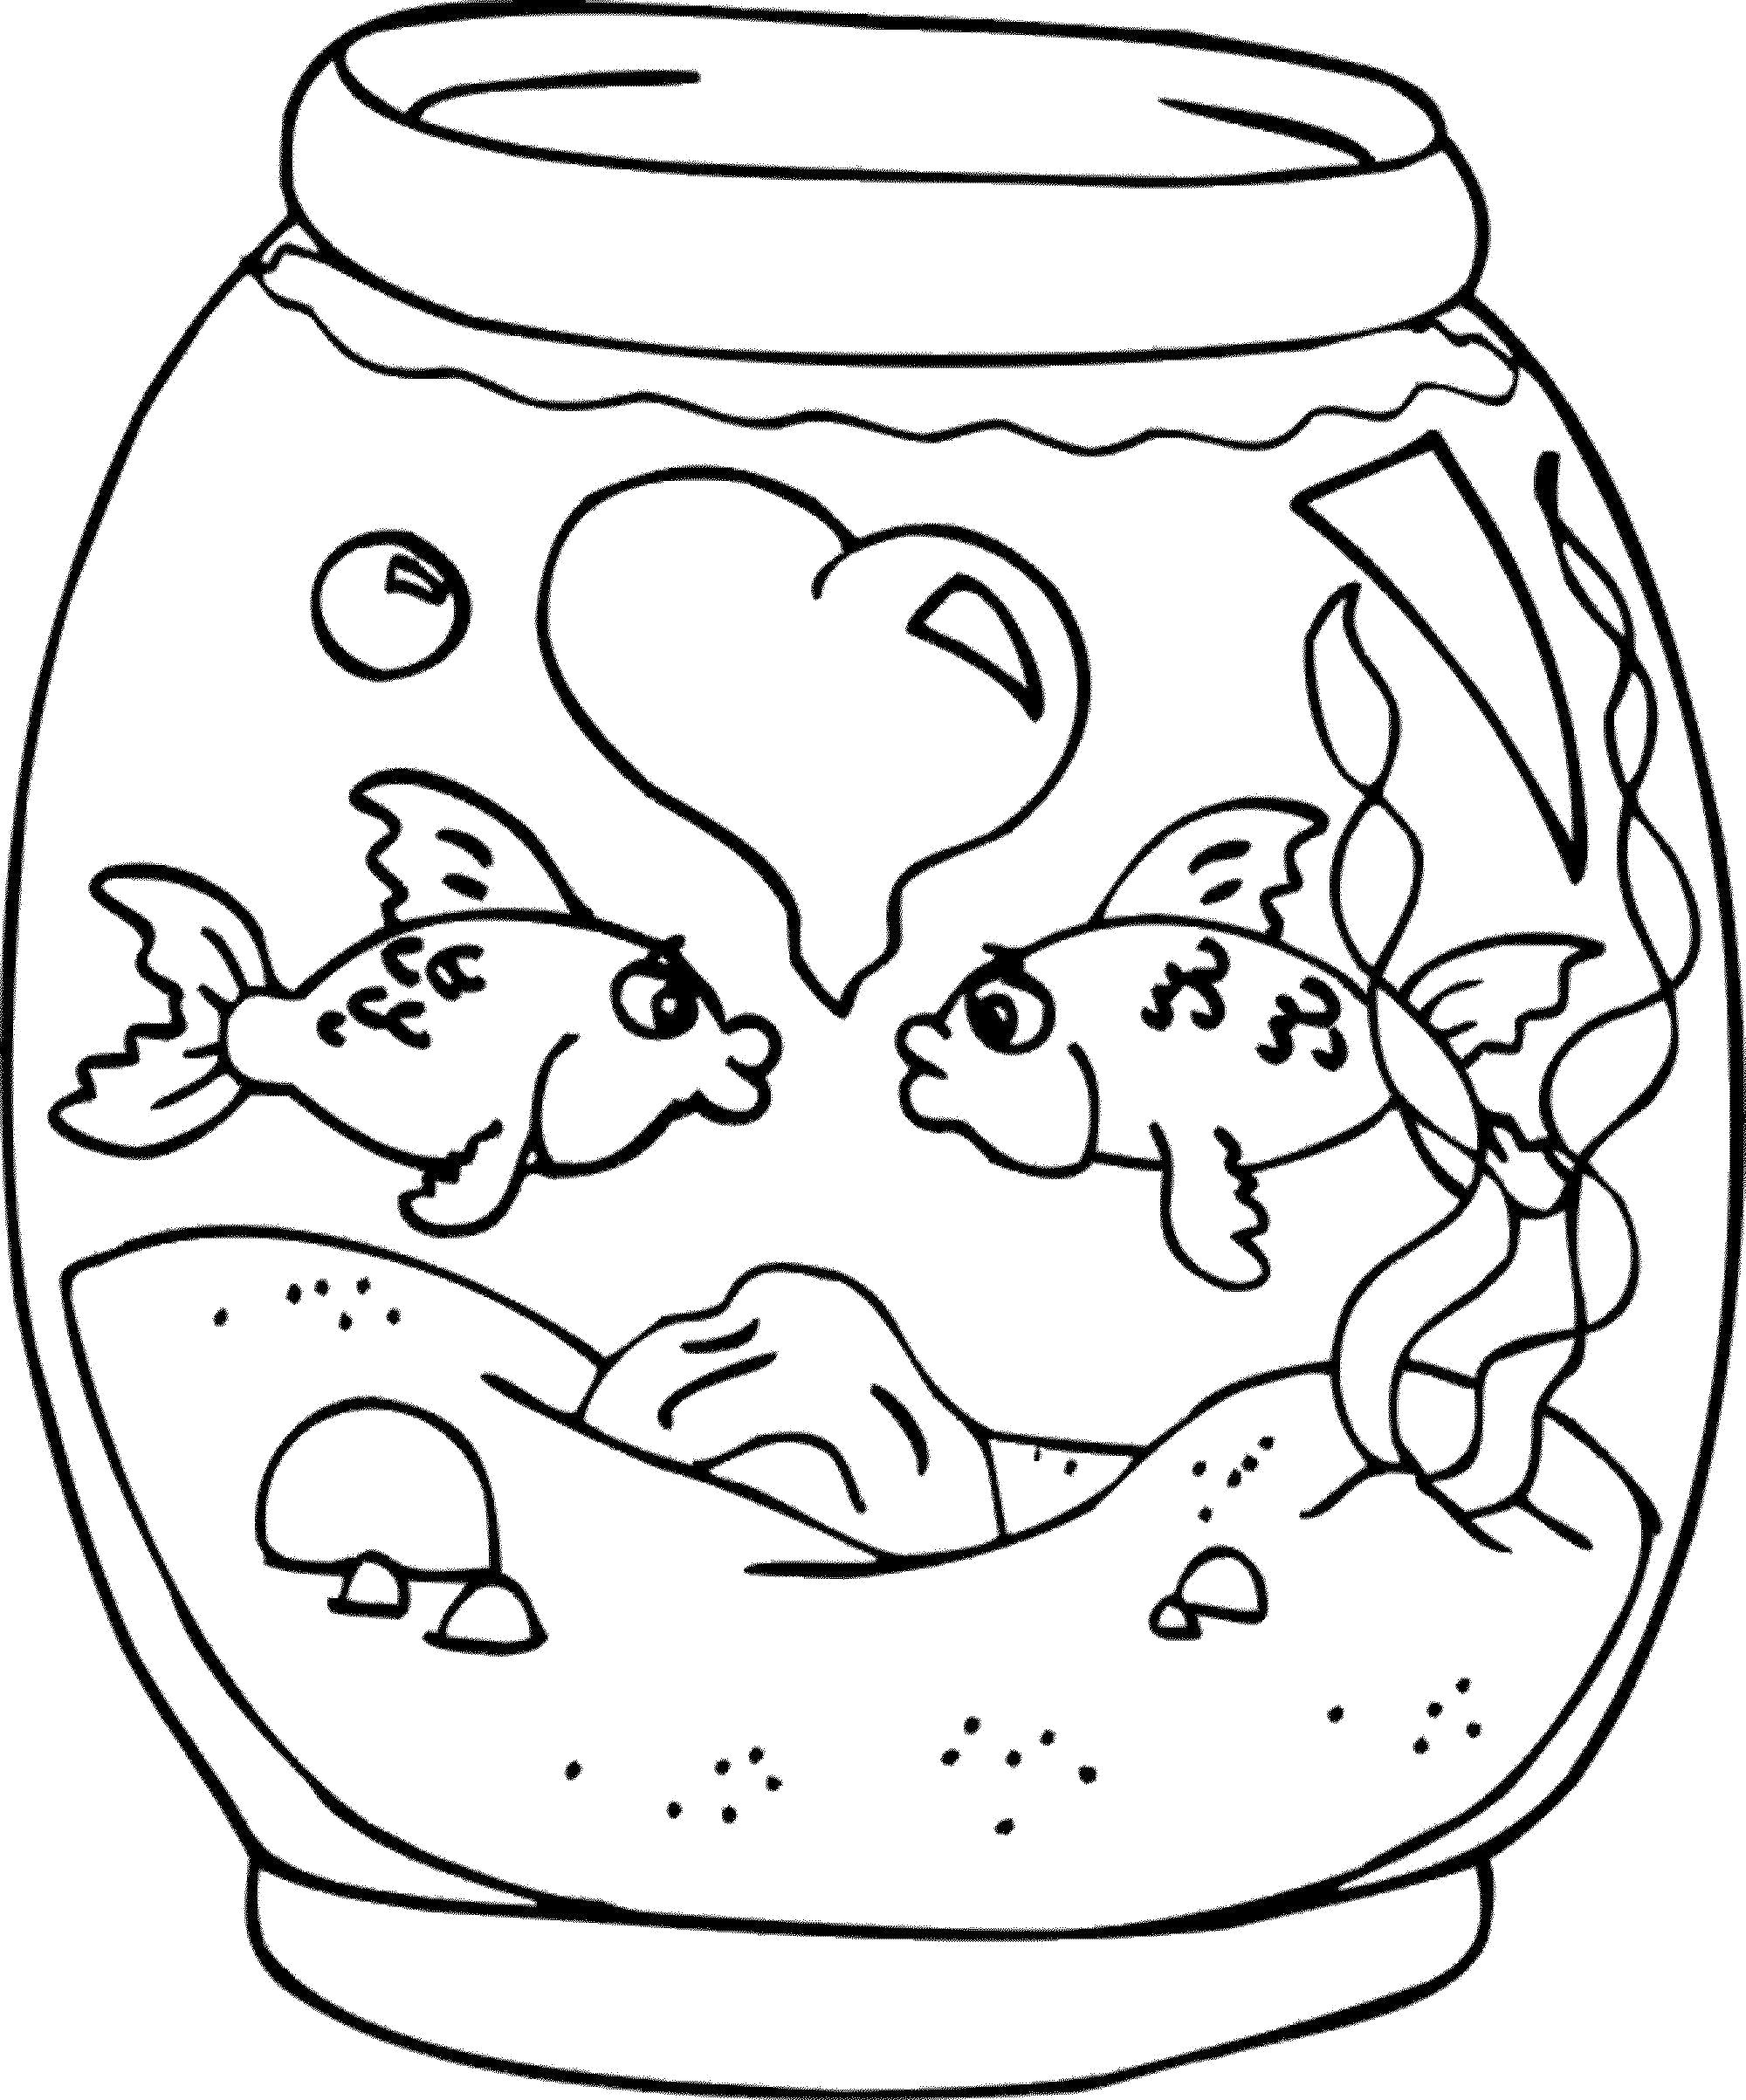 Раскраска  аквариум с рыбами. Скачать Аквариумные рыбы.  Распечатать Аквариумные рыбы